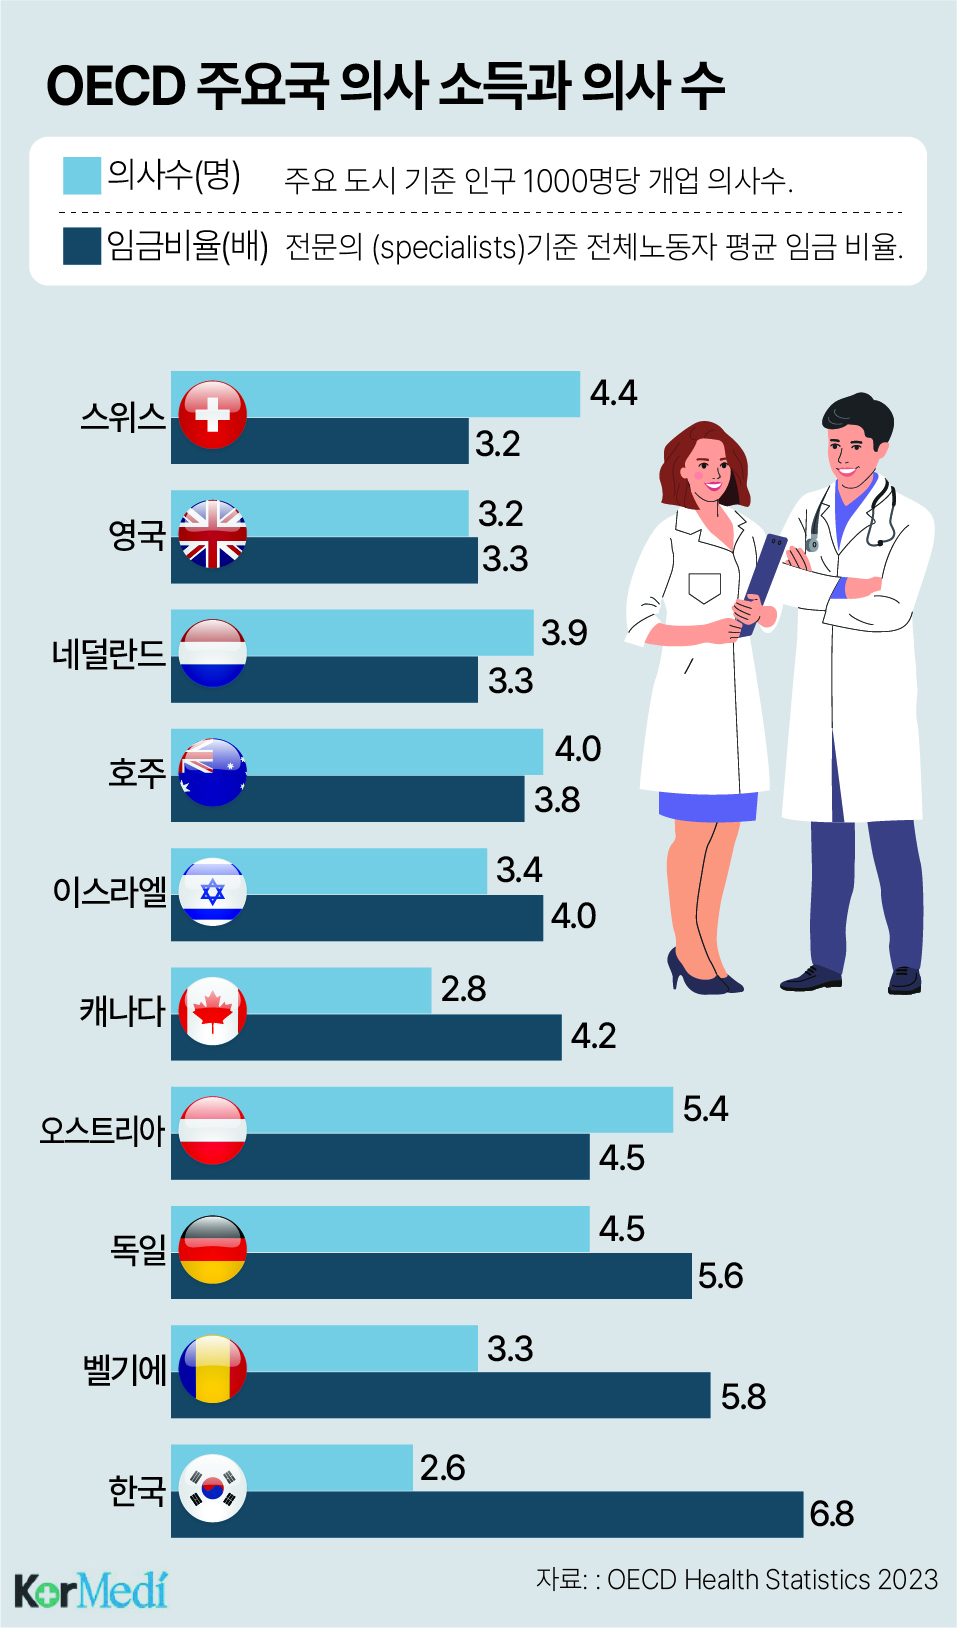 [한컷건강] 한국 의사 소득 가장 높은데 의사 수는 최하위?